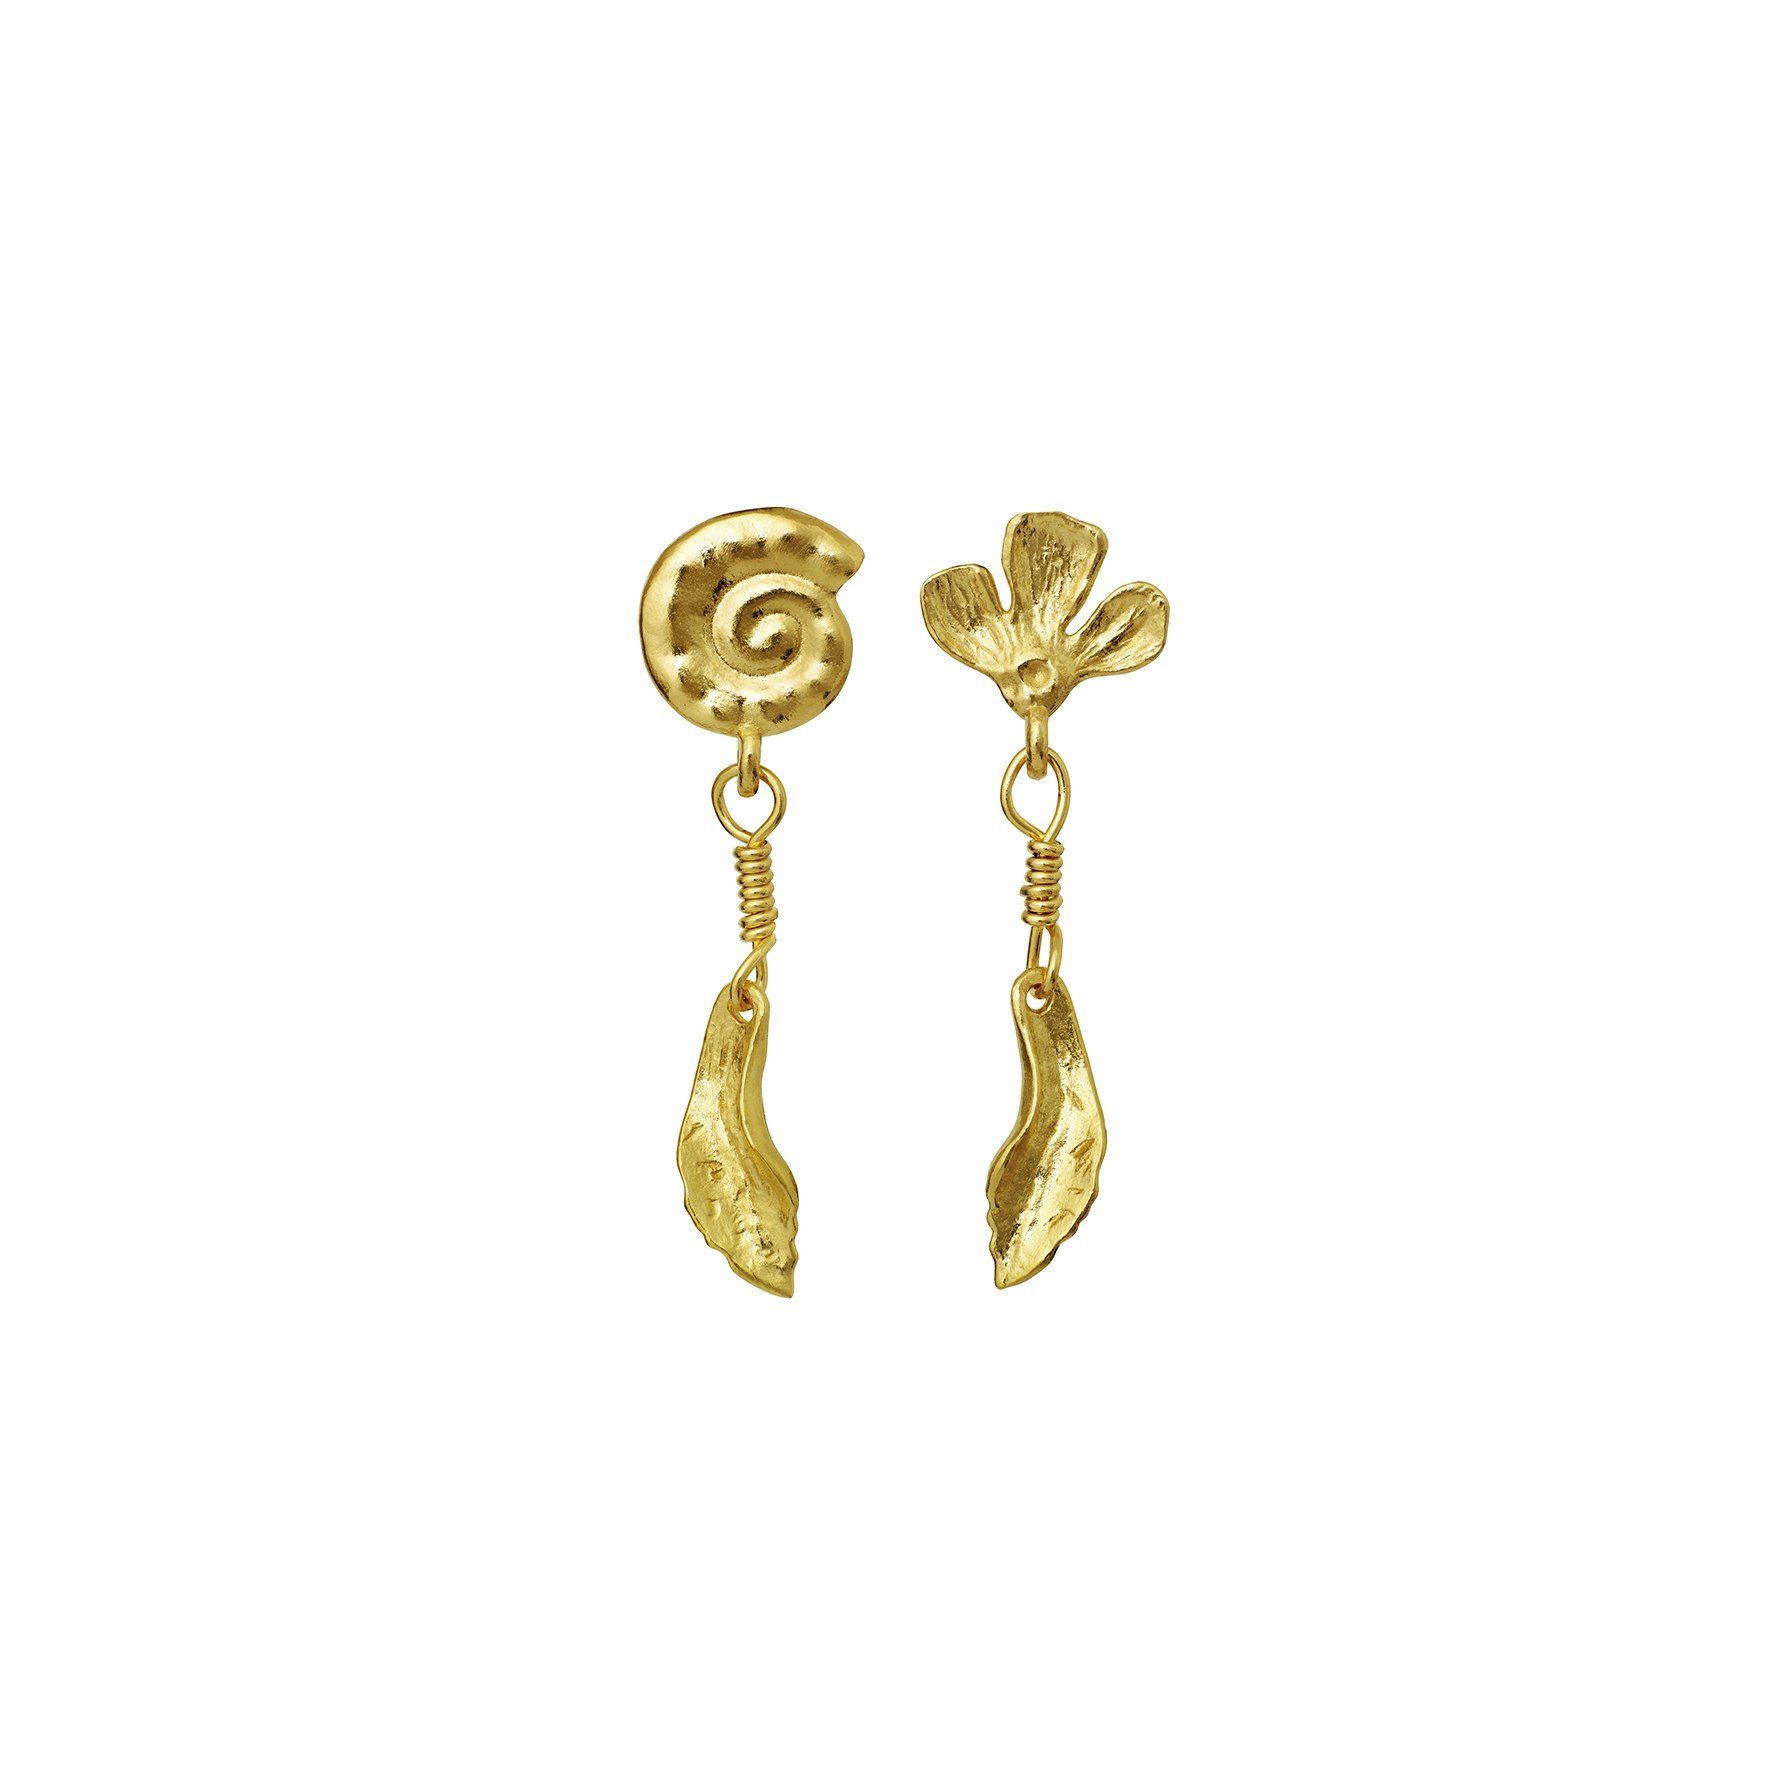 Carmel Earrings from Maanesten in Goldplated Silver Sterling 925